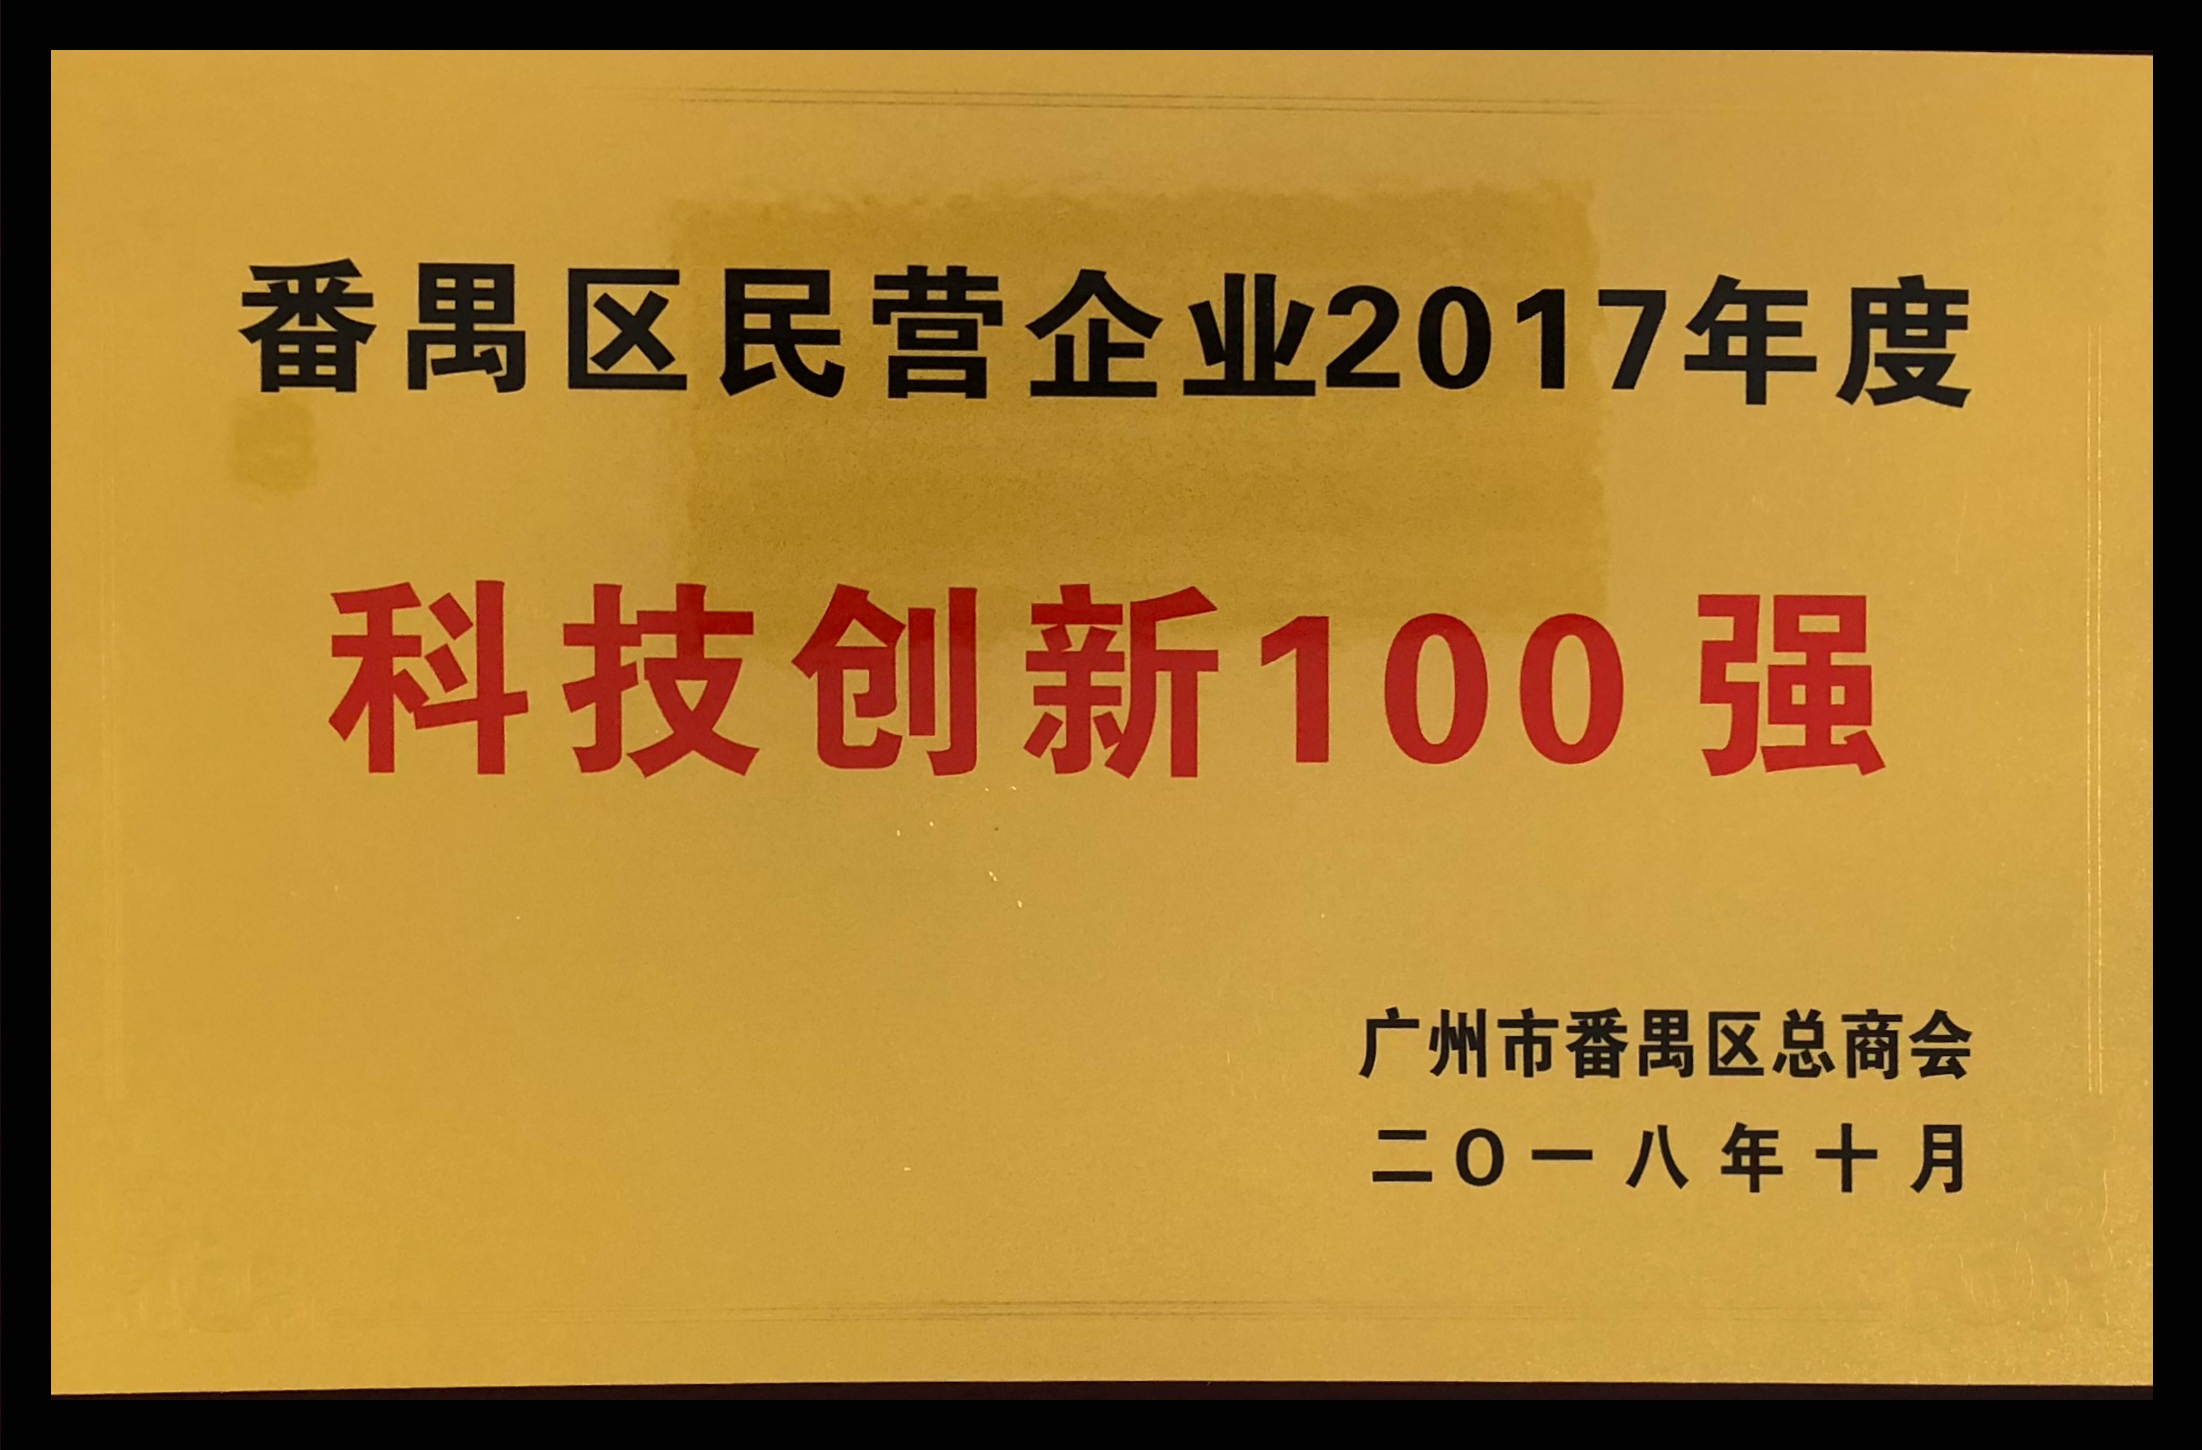 番禺區民營企業2017年度科技創新100強